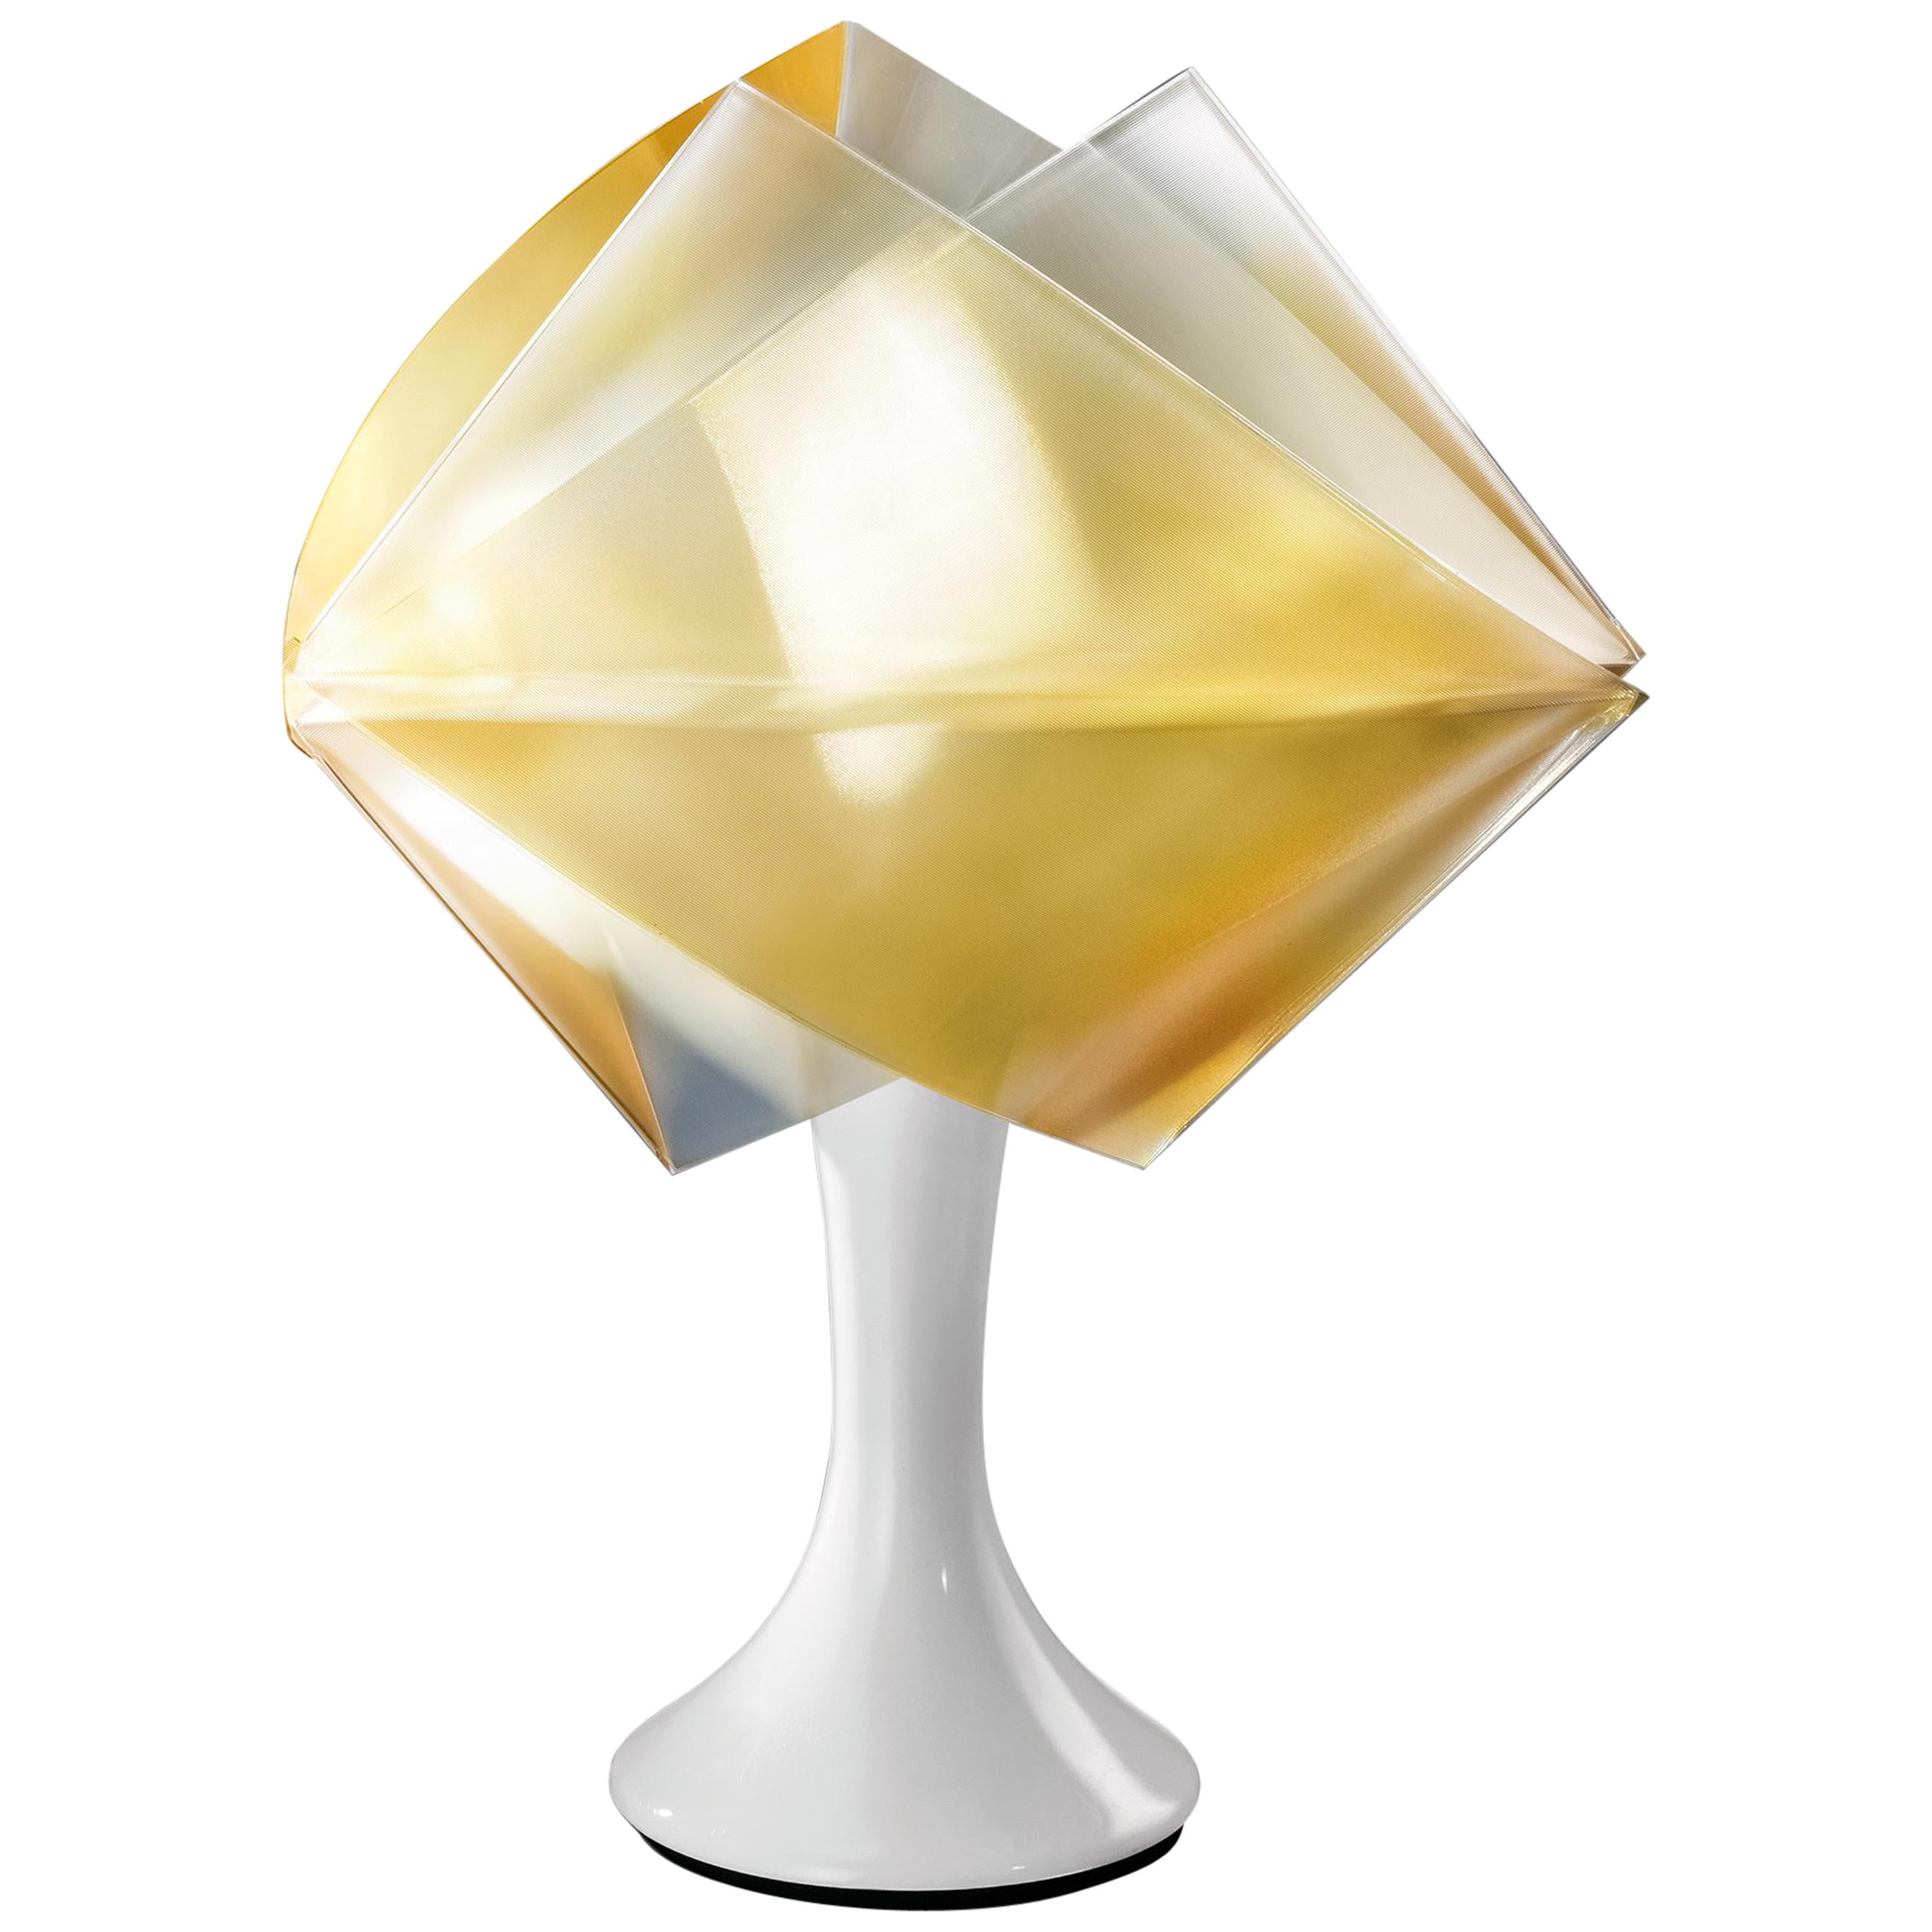 SLAMP Gemmy Prisma Table Light in Gold by Spalletta, Croce, Ragnisco & Wijffels